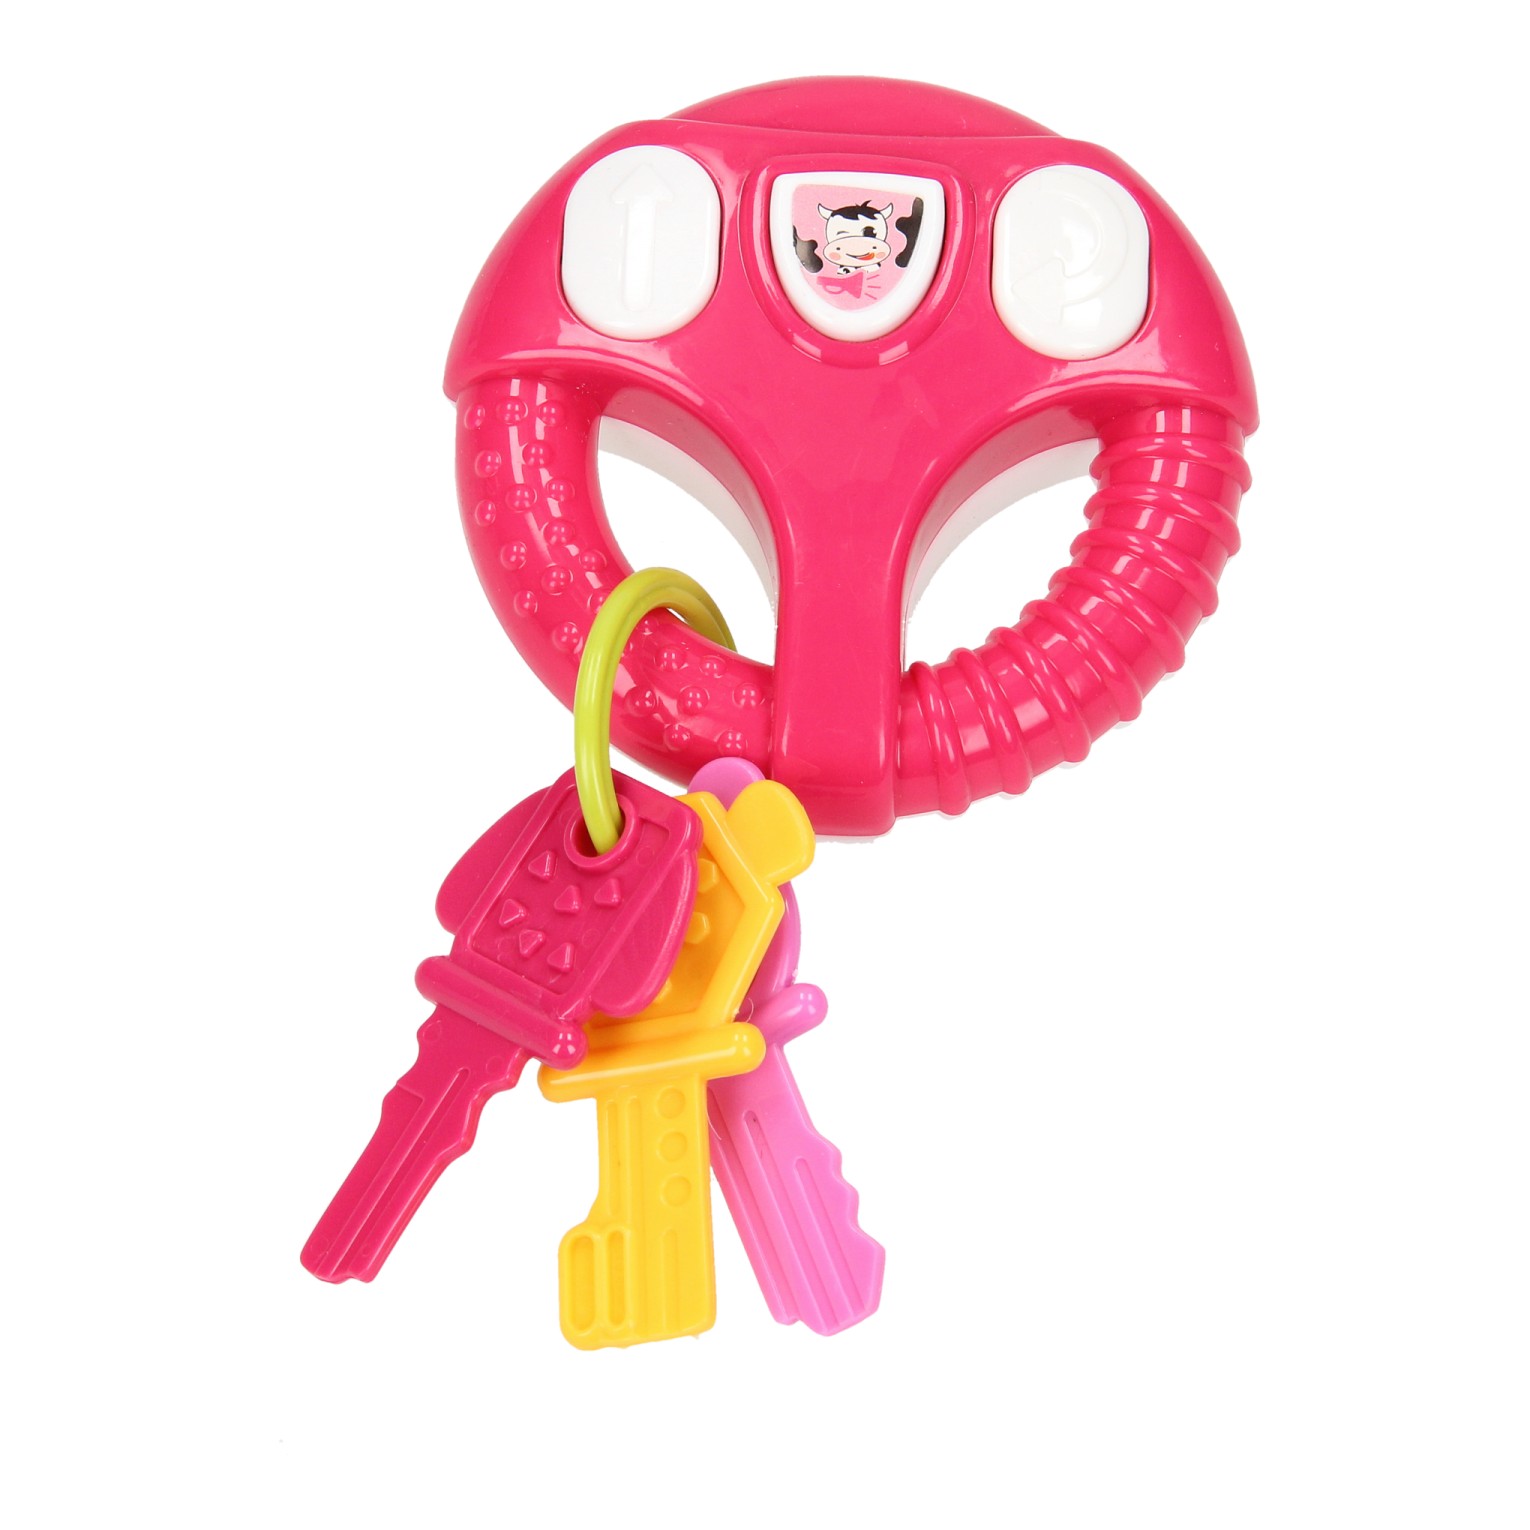 Spielrad mit Schlüsseln – Rosa